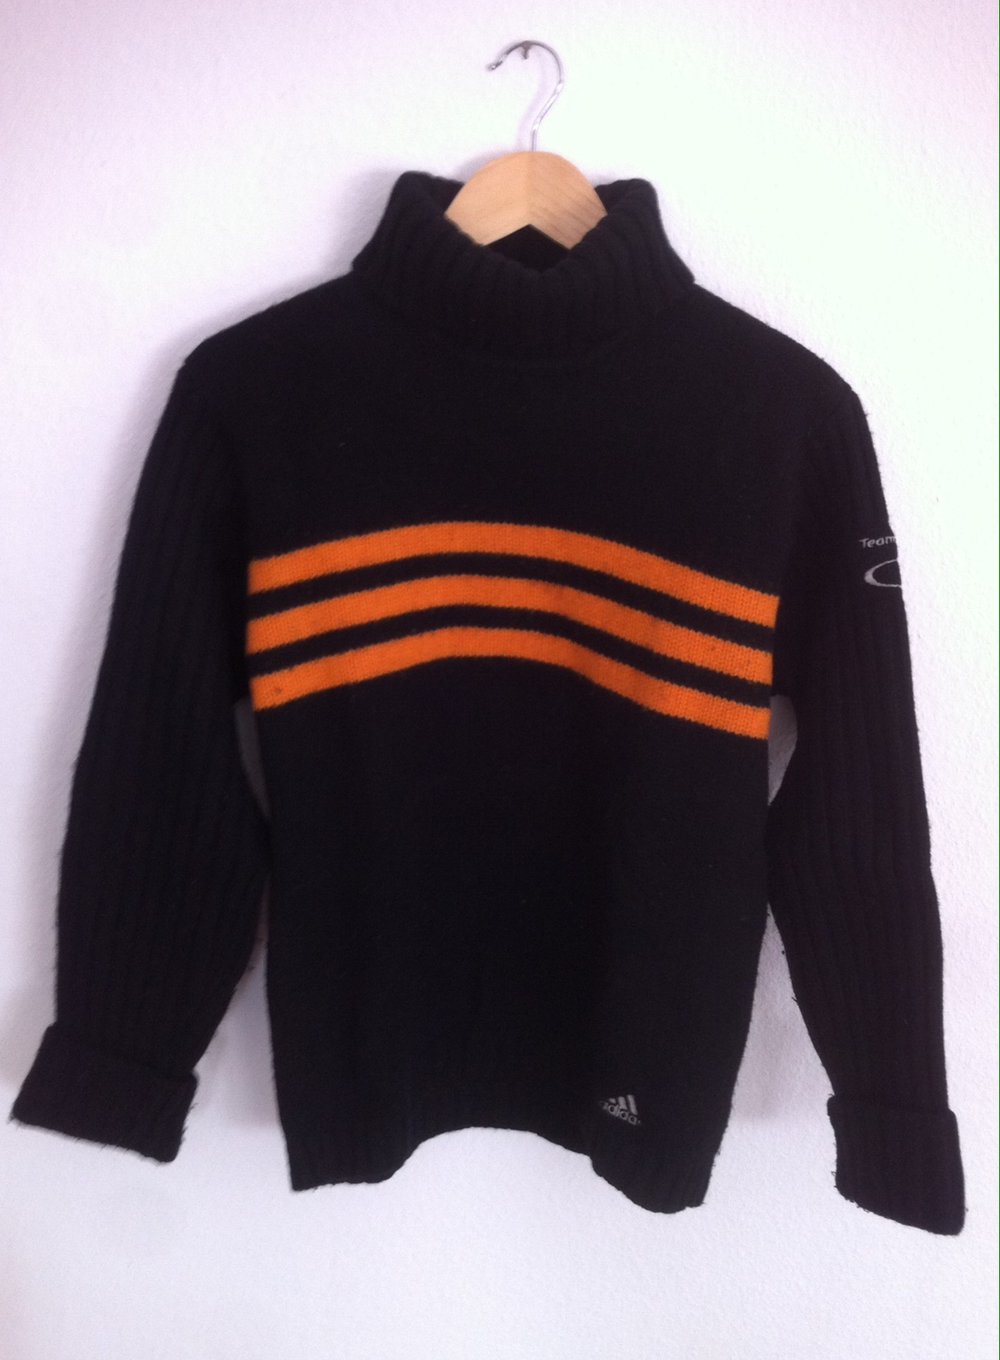 Strickpullover Rollkragen schwarz Adidas Streifen orange gestrickt Pulli  Pullover locker bequem warm oversize Herbst Winter :: Kleiderkorb.ch